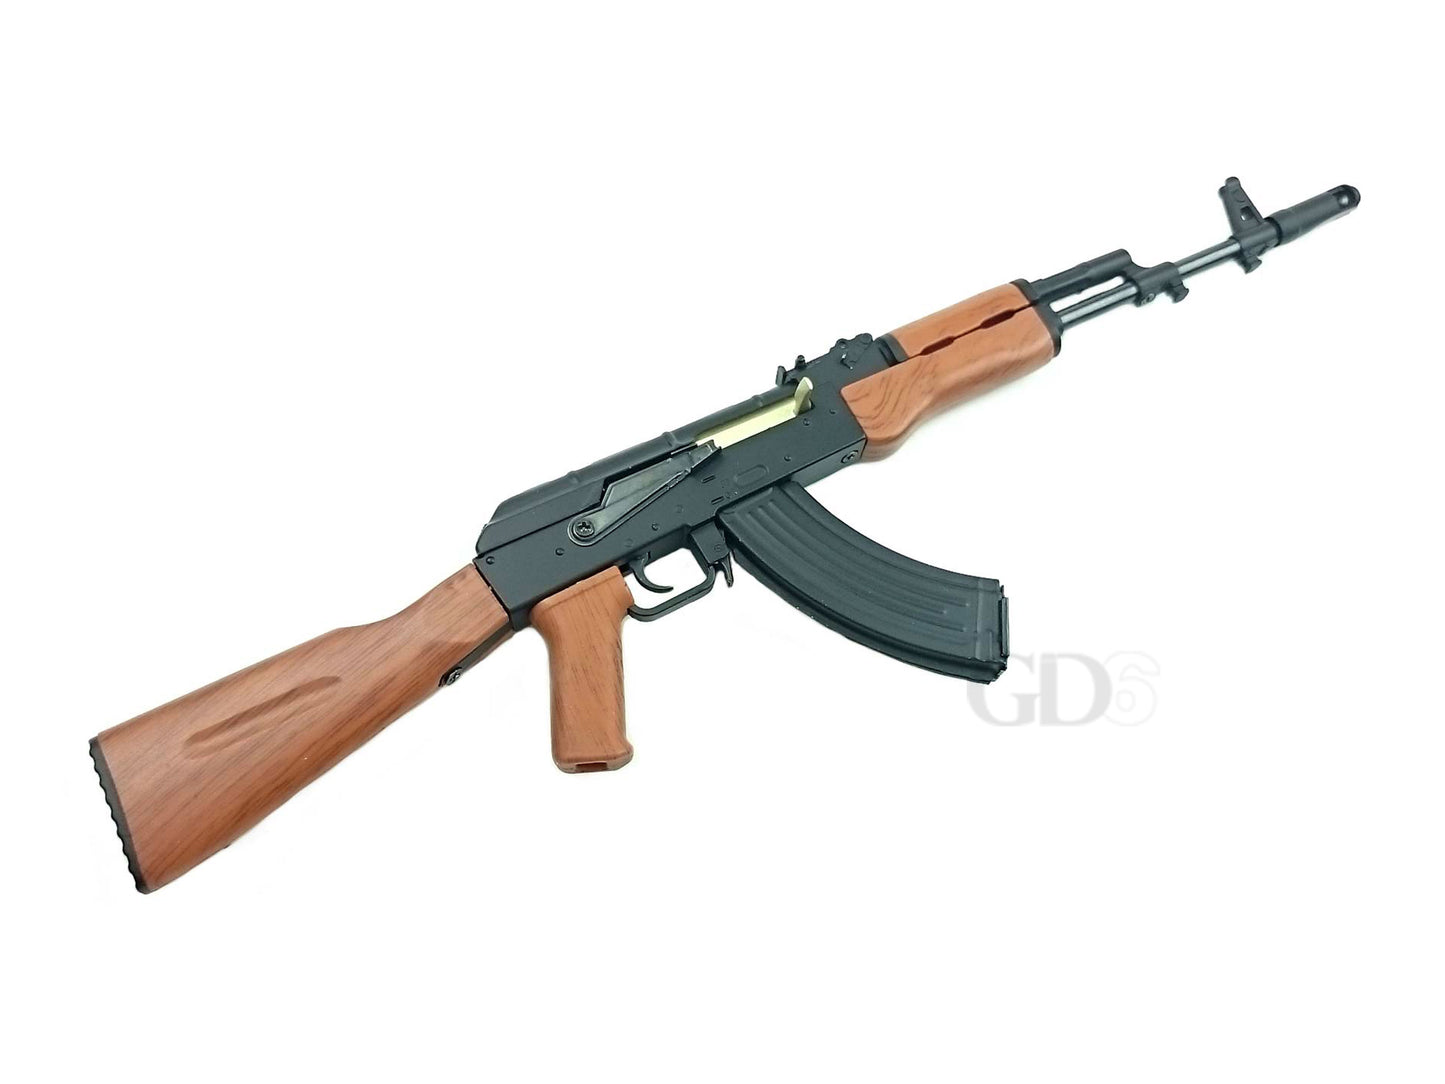 1/3.5 スケール AK47 金属製 ミニモデルガン 組立キット.